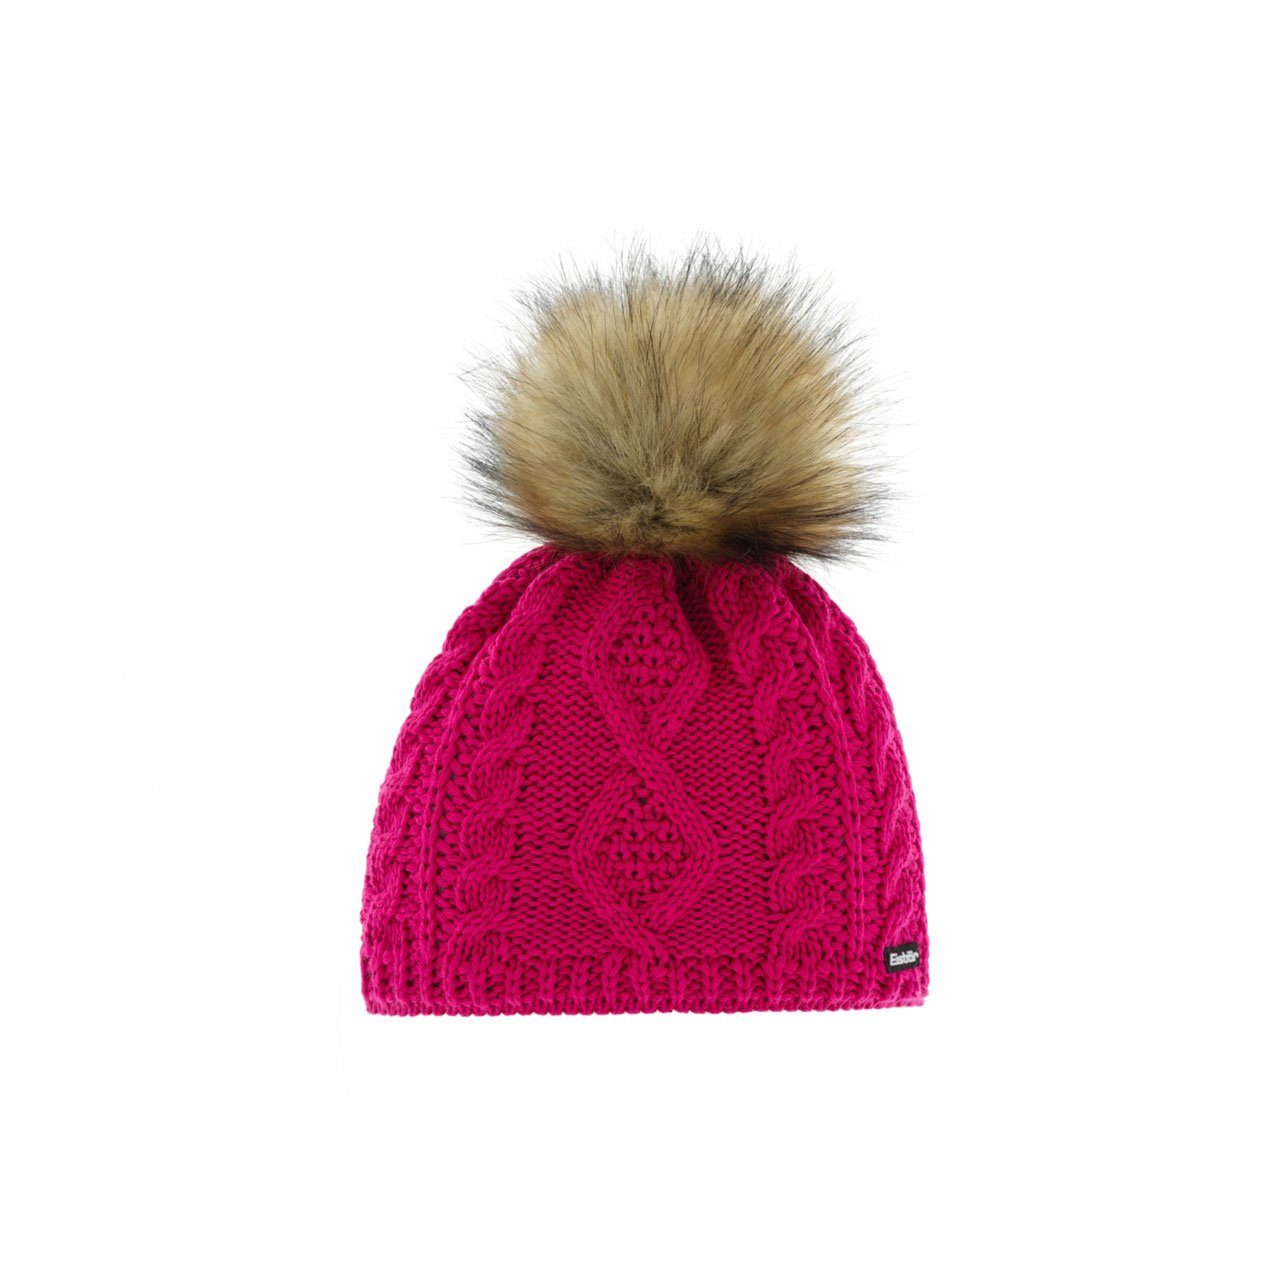 Eisbär Strickmütze Damen Mütze Nelia Lux online kaufen | OTTO